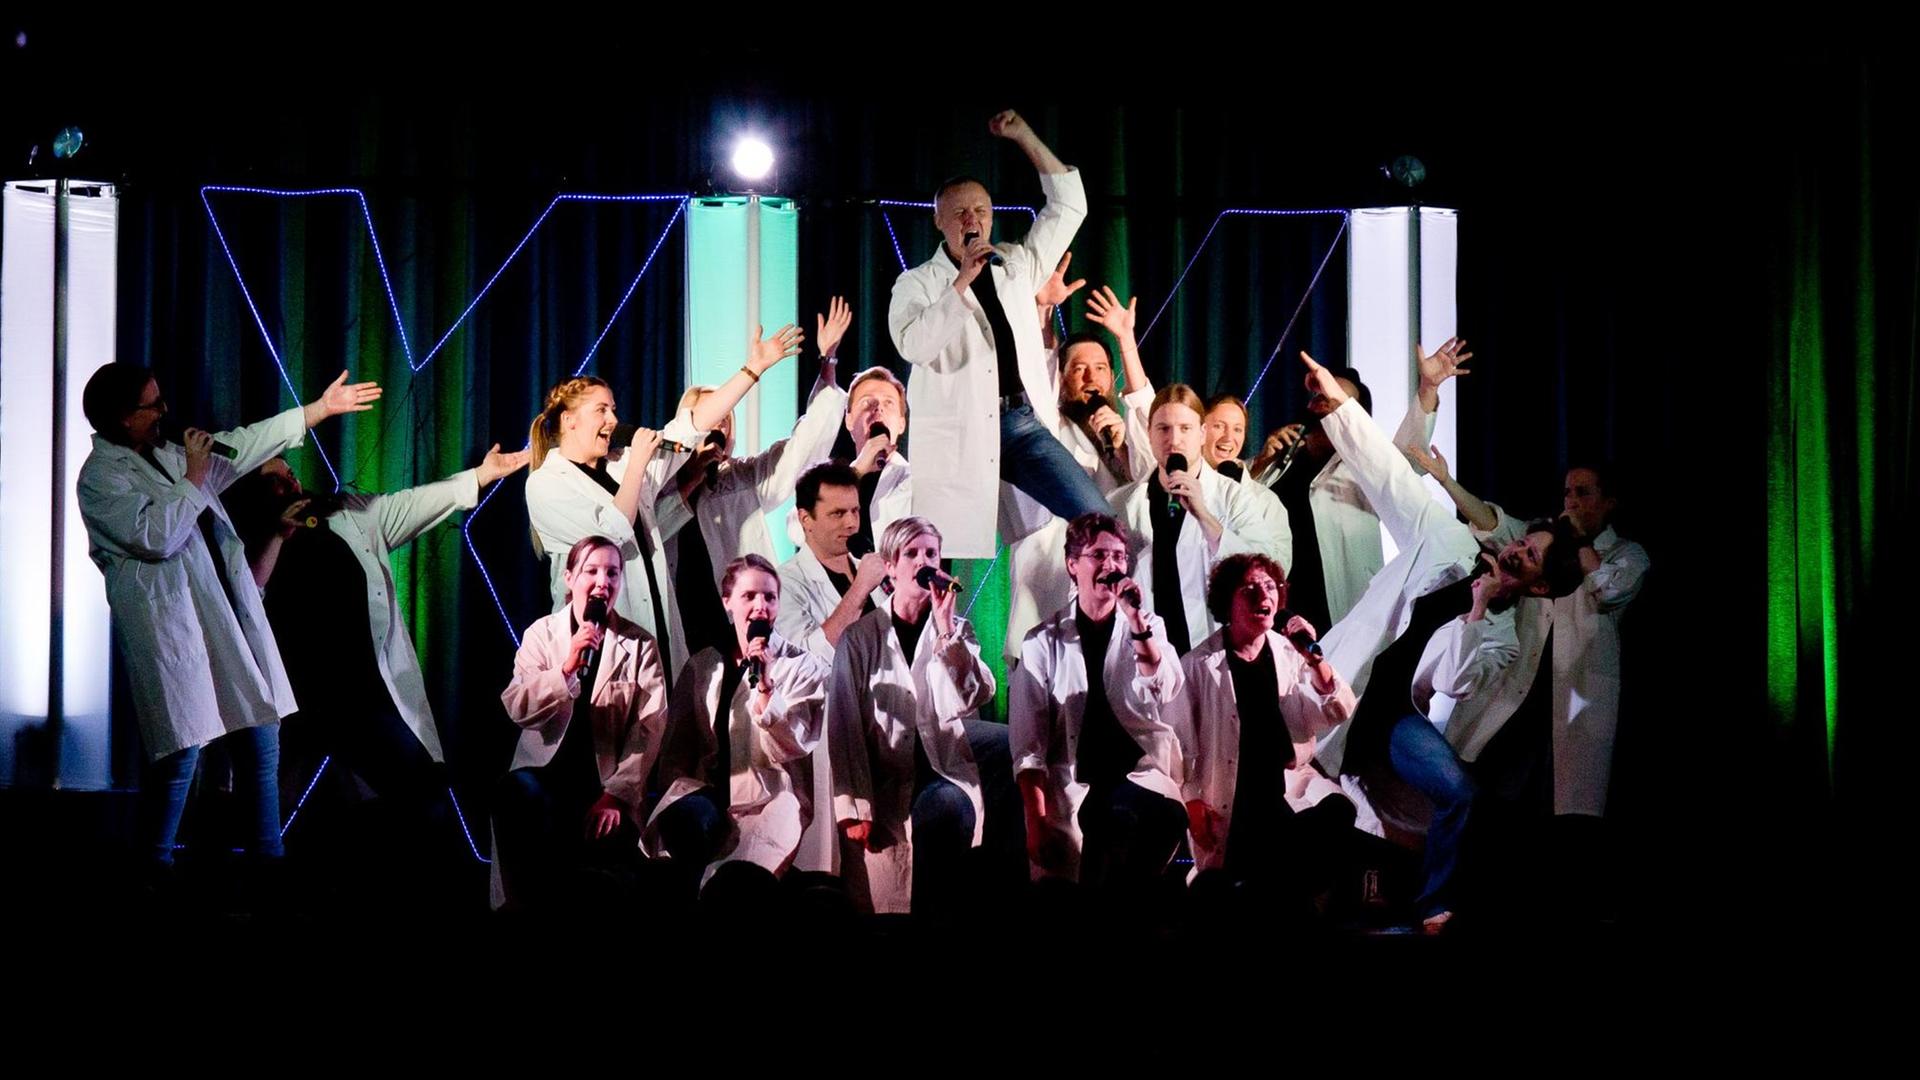 Die Sänger des Chores tragen bei einem Konzert auf der Bühne weiße Kittel. Jeder hält ein Mikrofon in der Hand.